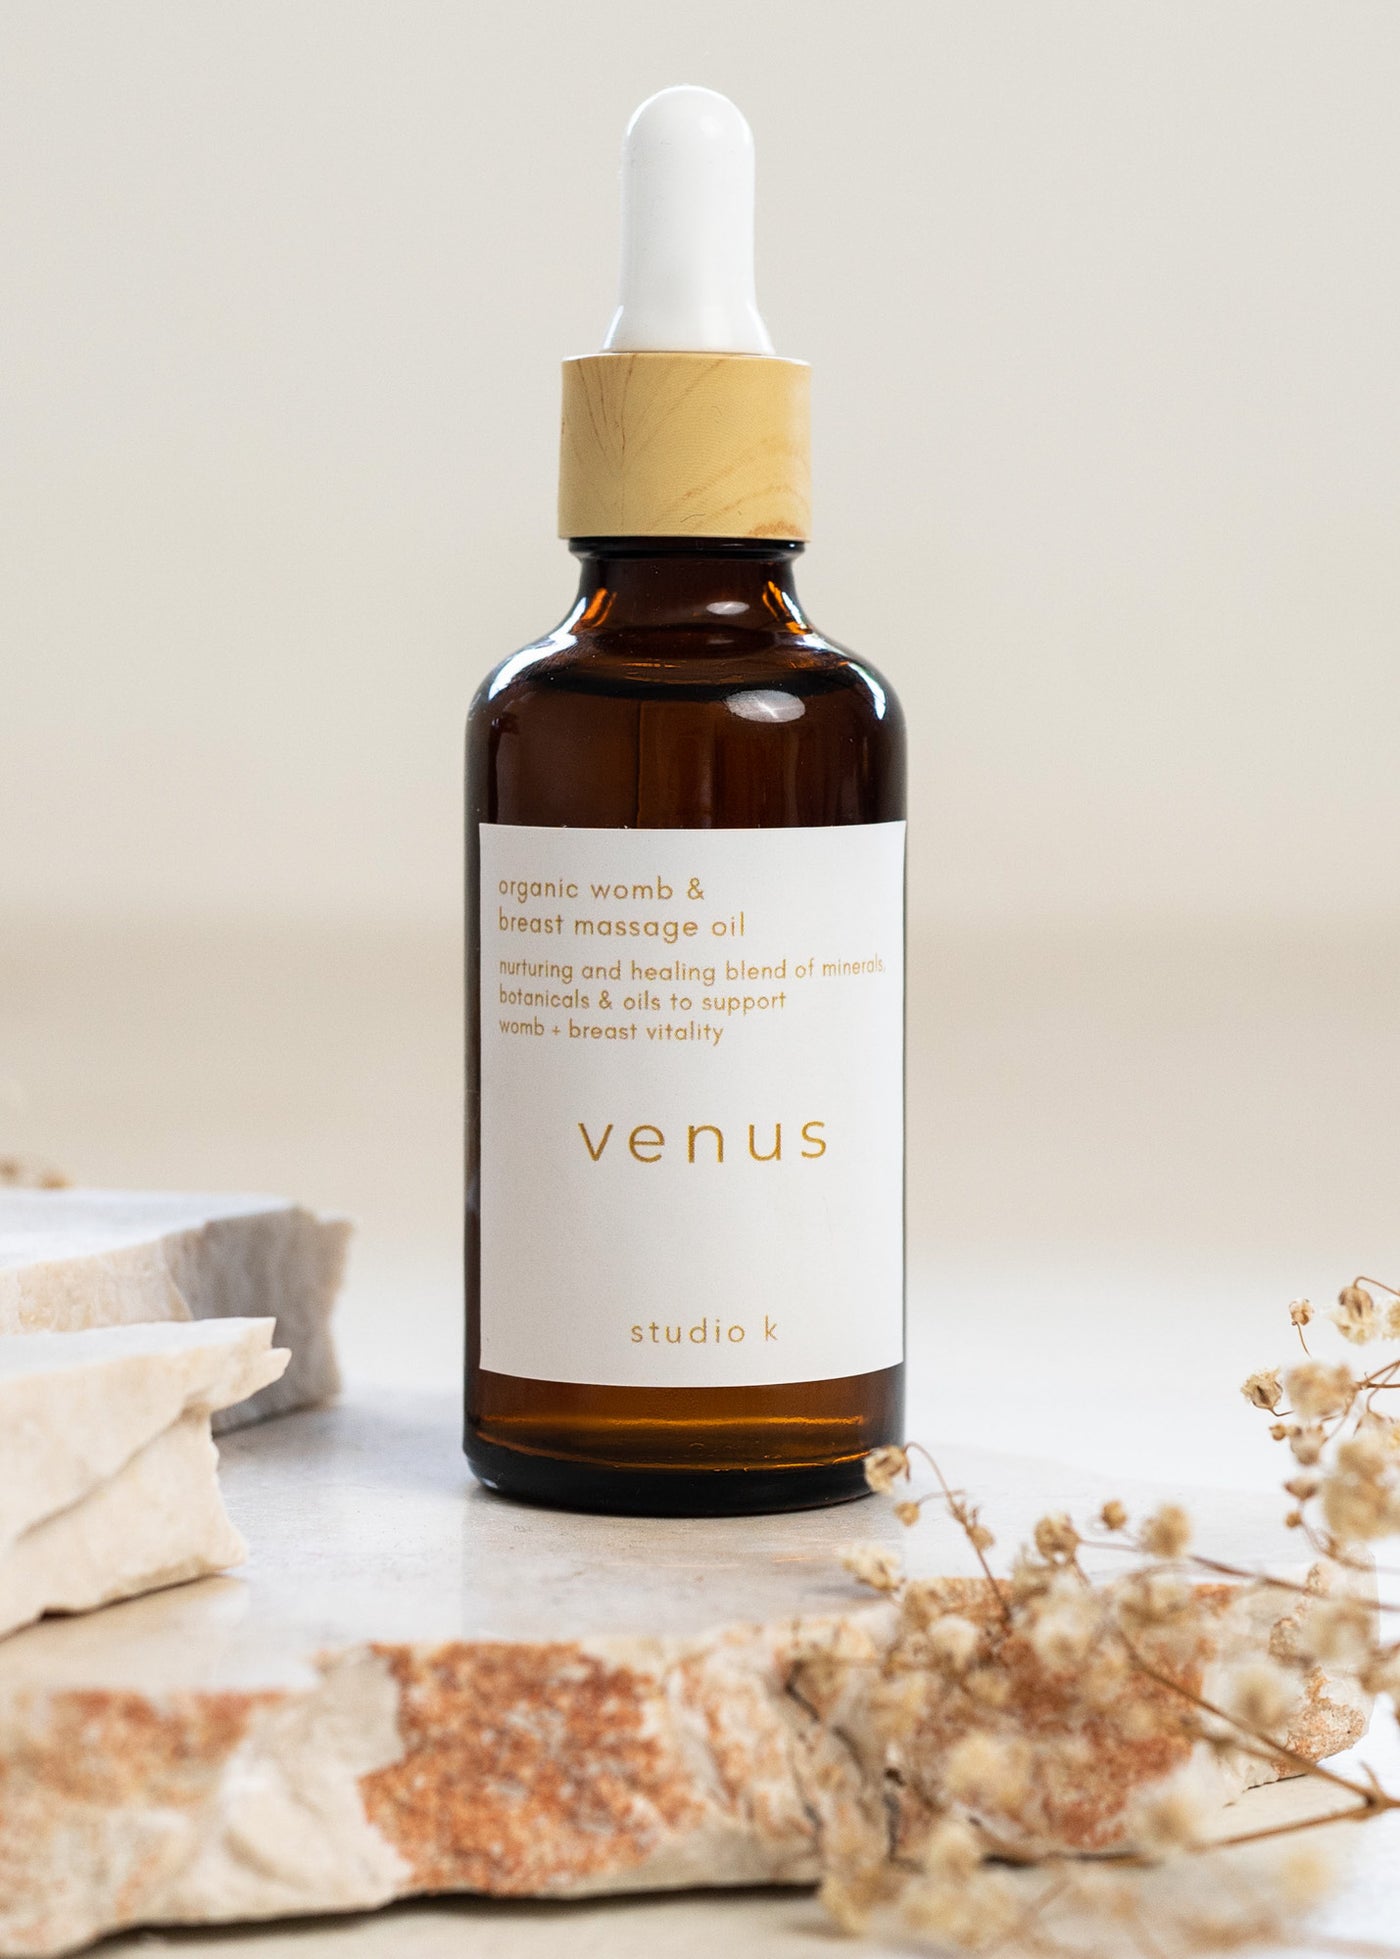 Venus - Womb and Breast massage oil